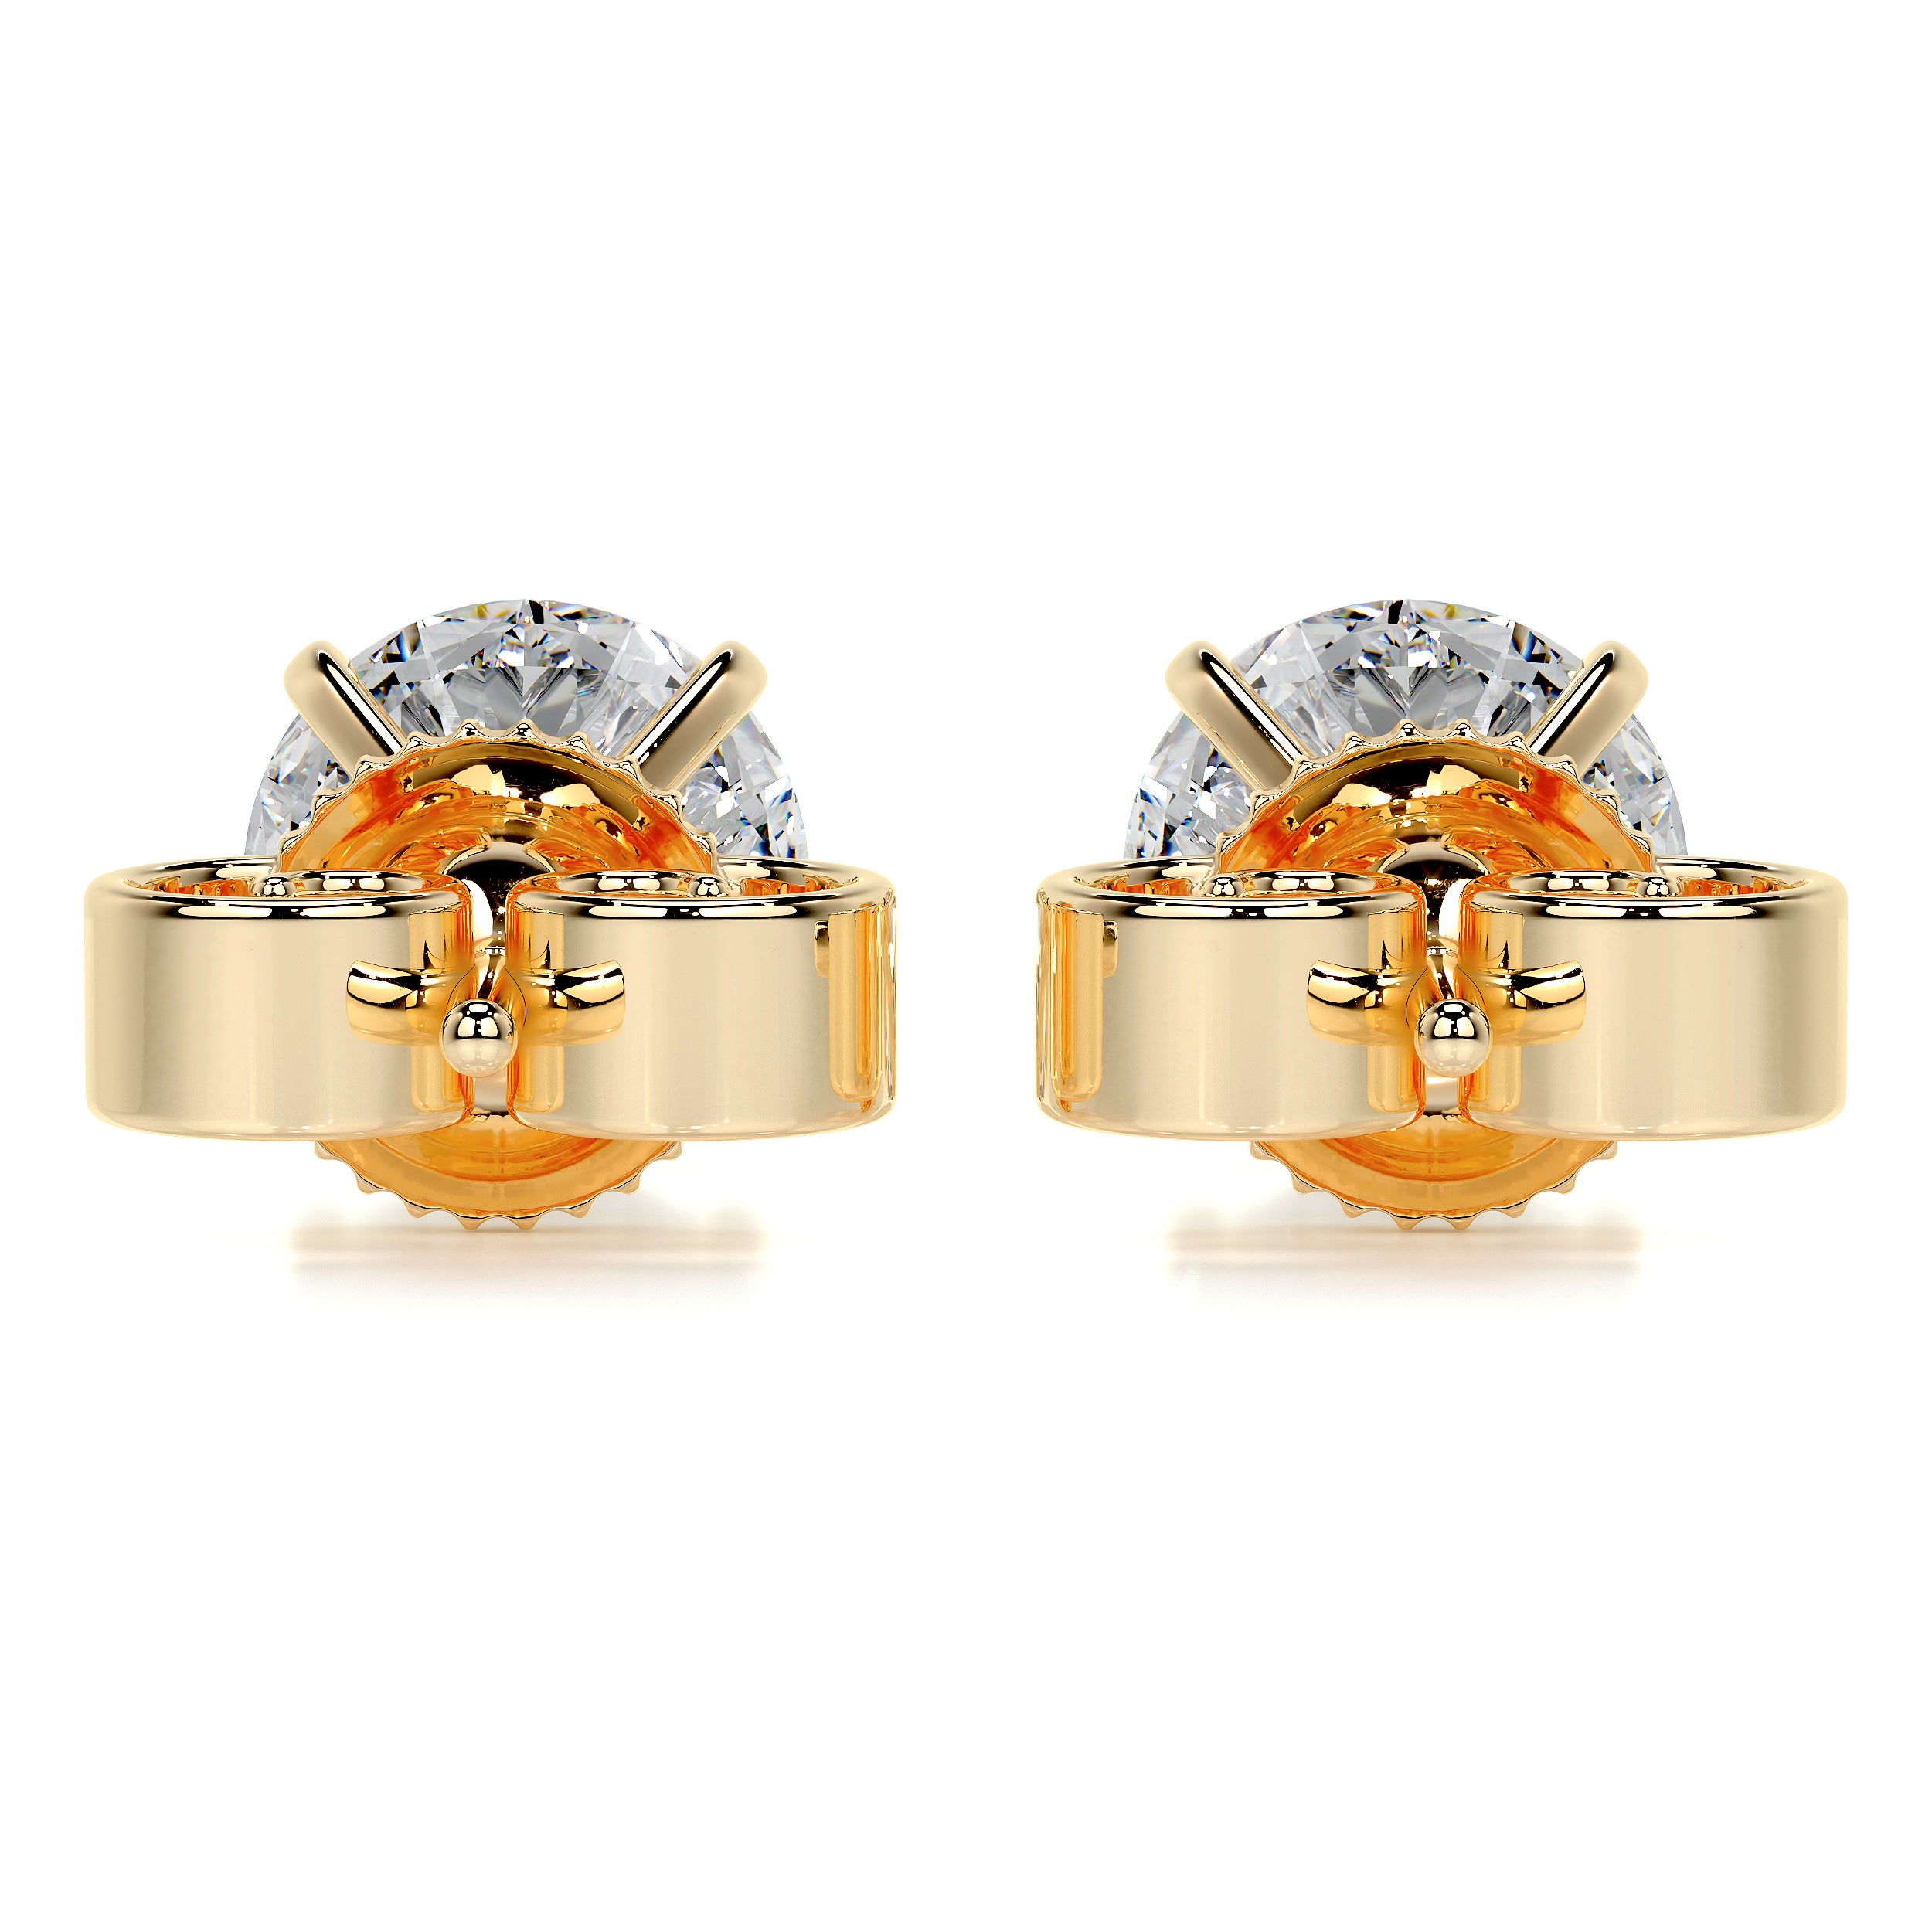 Allen Diamond Earrings   (6 Carat) -18K Yellow Gold